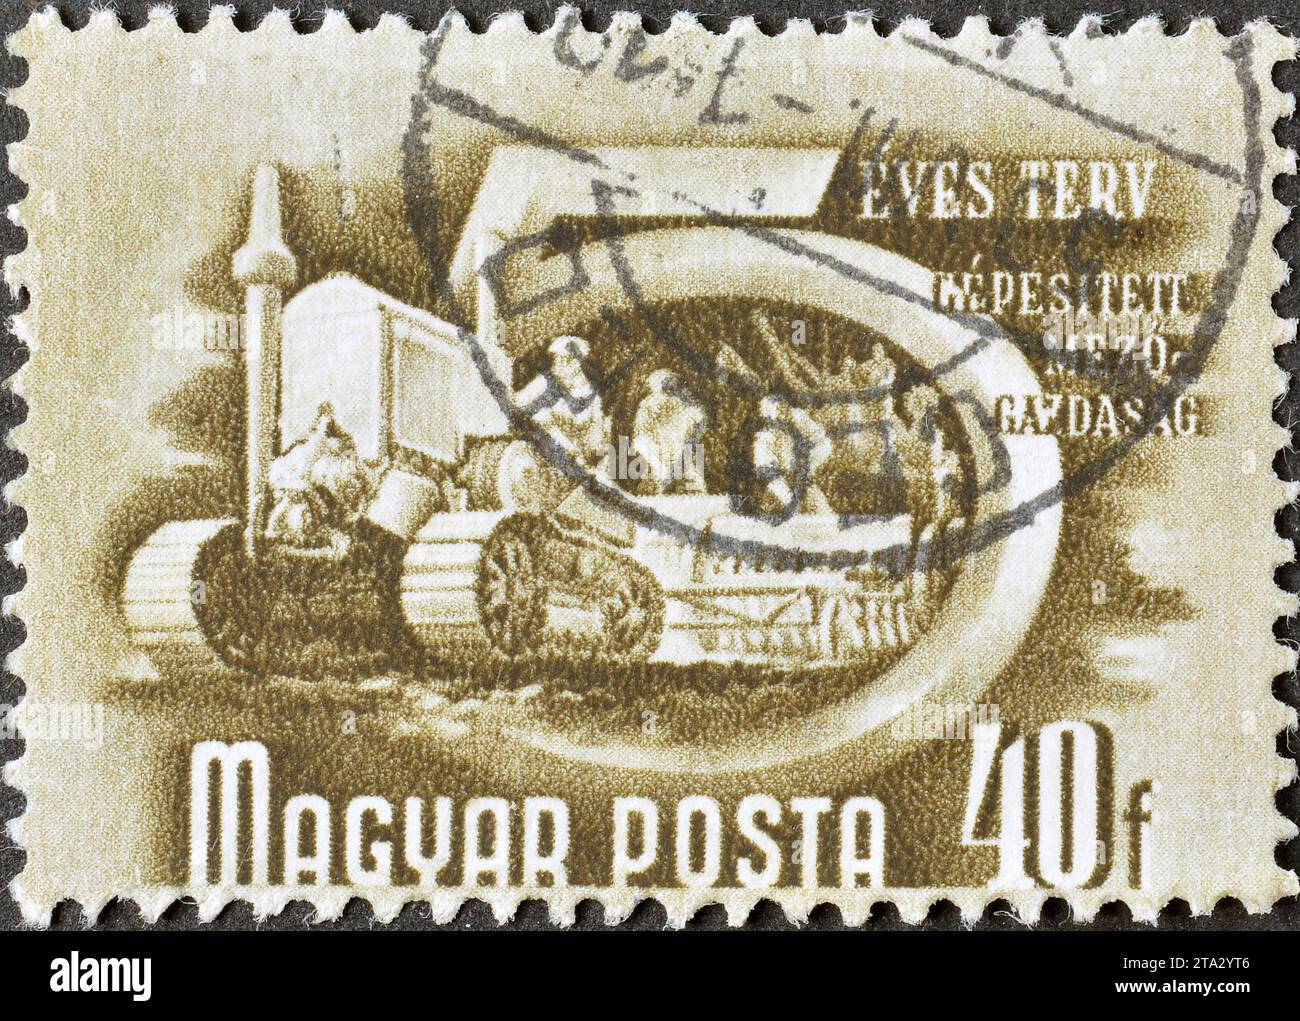 Timbre-poste annulé imprimé par la Hongrie, qui montre l'agriculture mécanisée, plan quinquennal, vers 1950. Banque D'Images